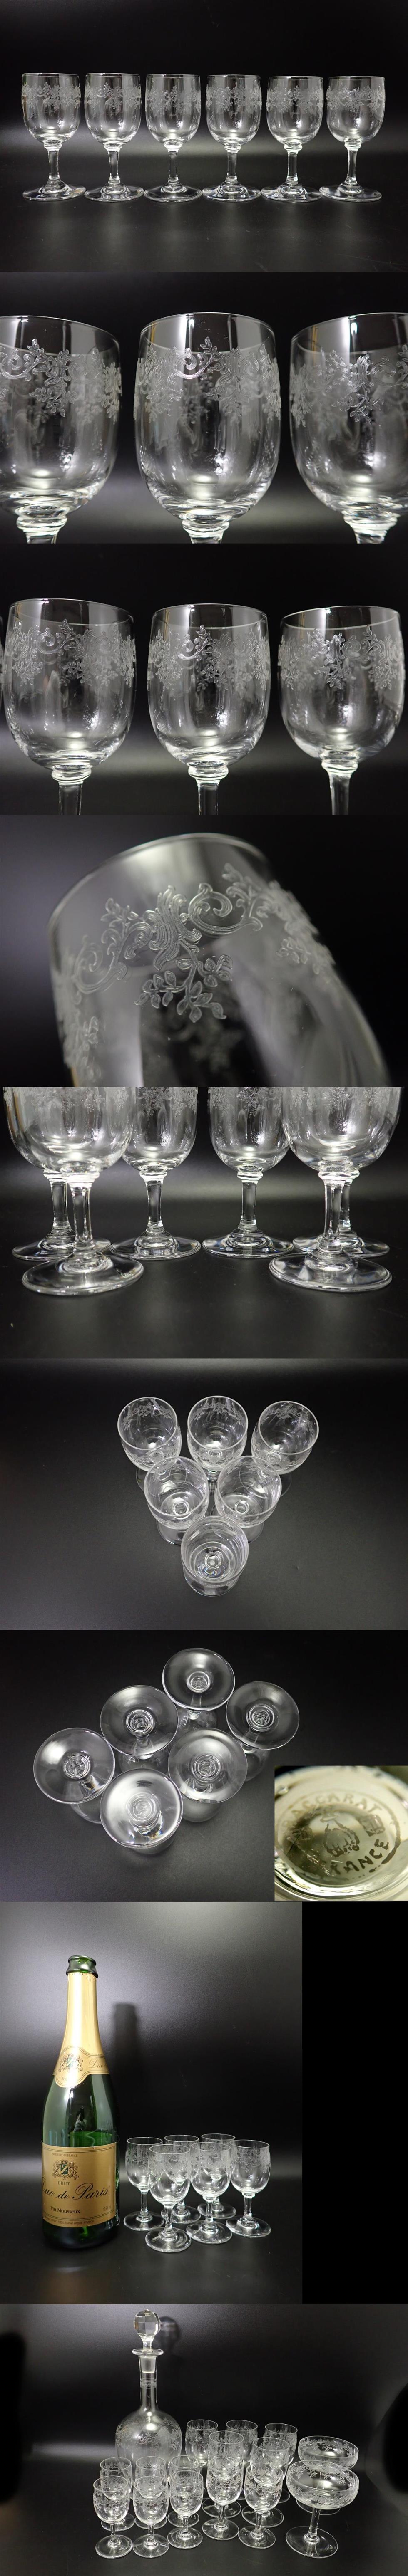 定番国産オールド バカラ セビーノ 日本酒 グラス 6個 リキュール Sevigne セヴィーヌ セヴィニエ アンティーク フランス ヴィンテージ f345 クリスタルガラス